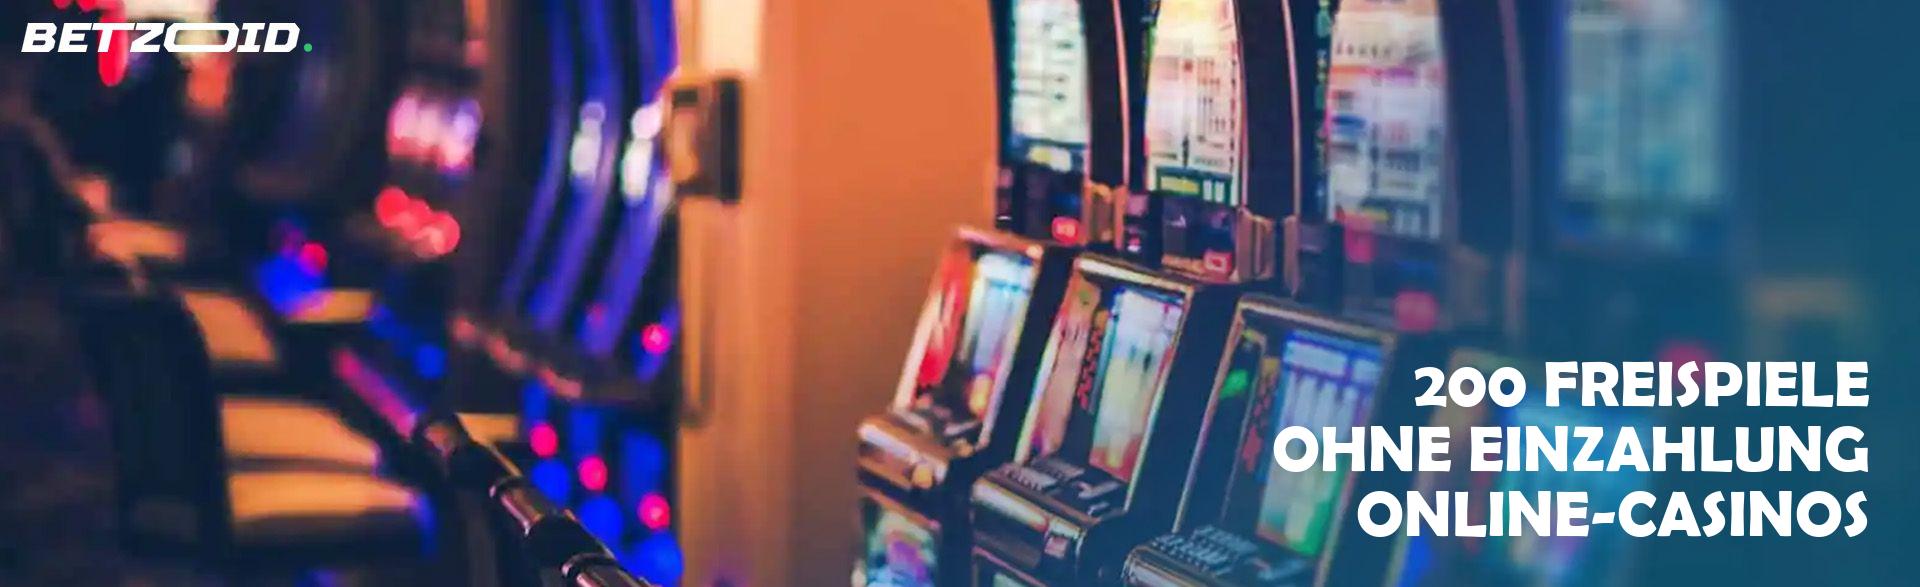 200 Freispiele ohne Einzahlung Online-Casinos.